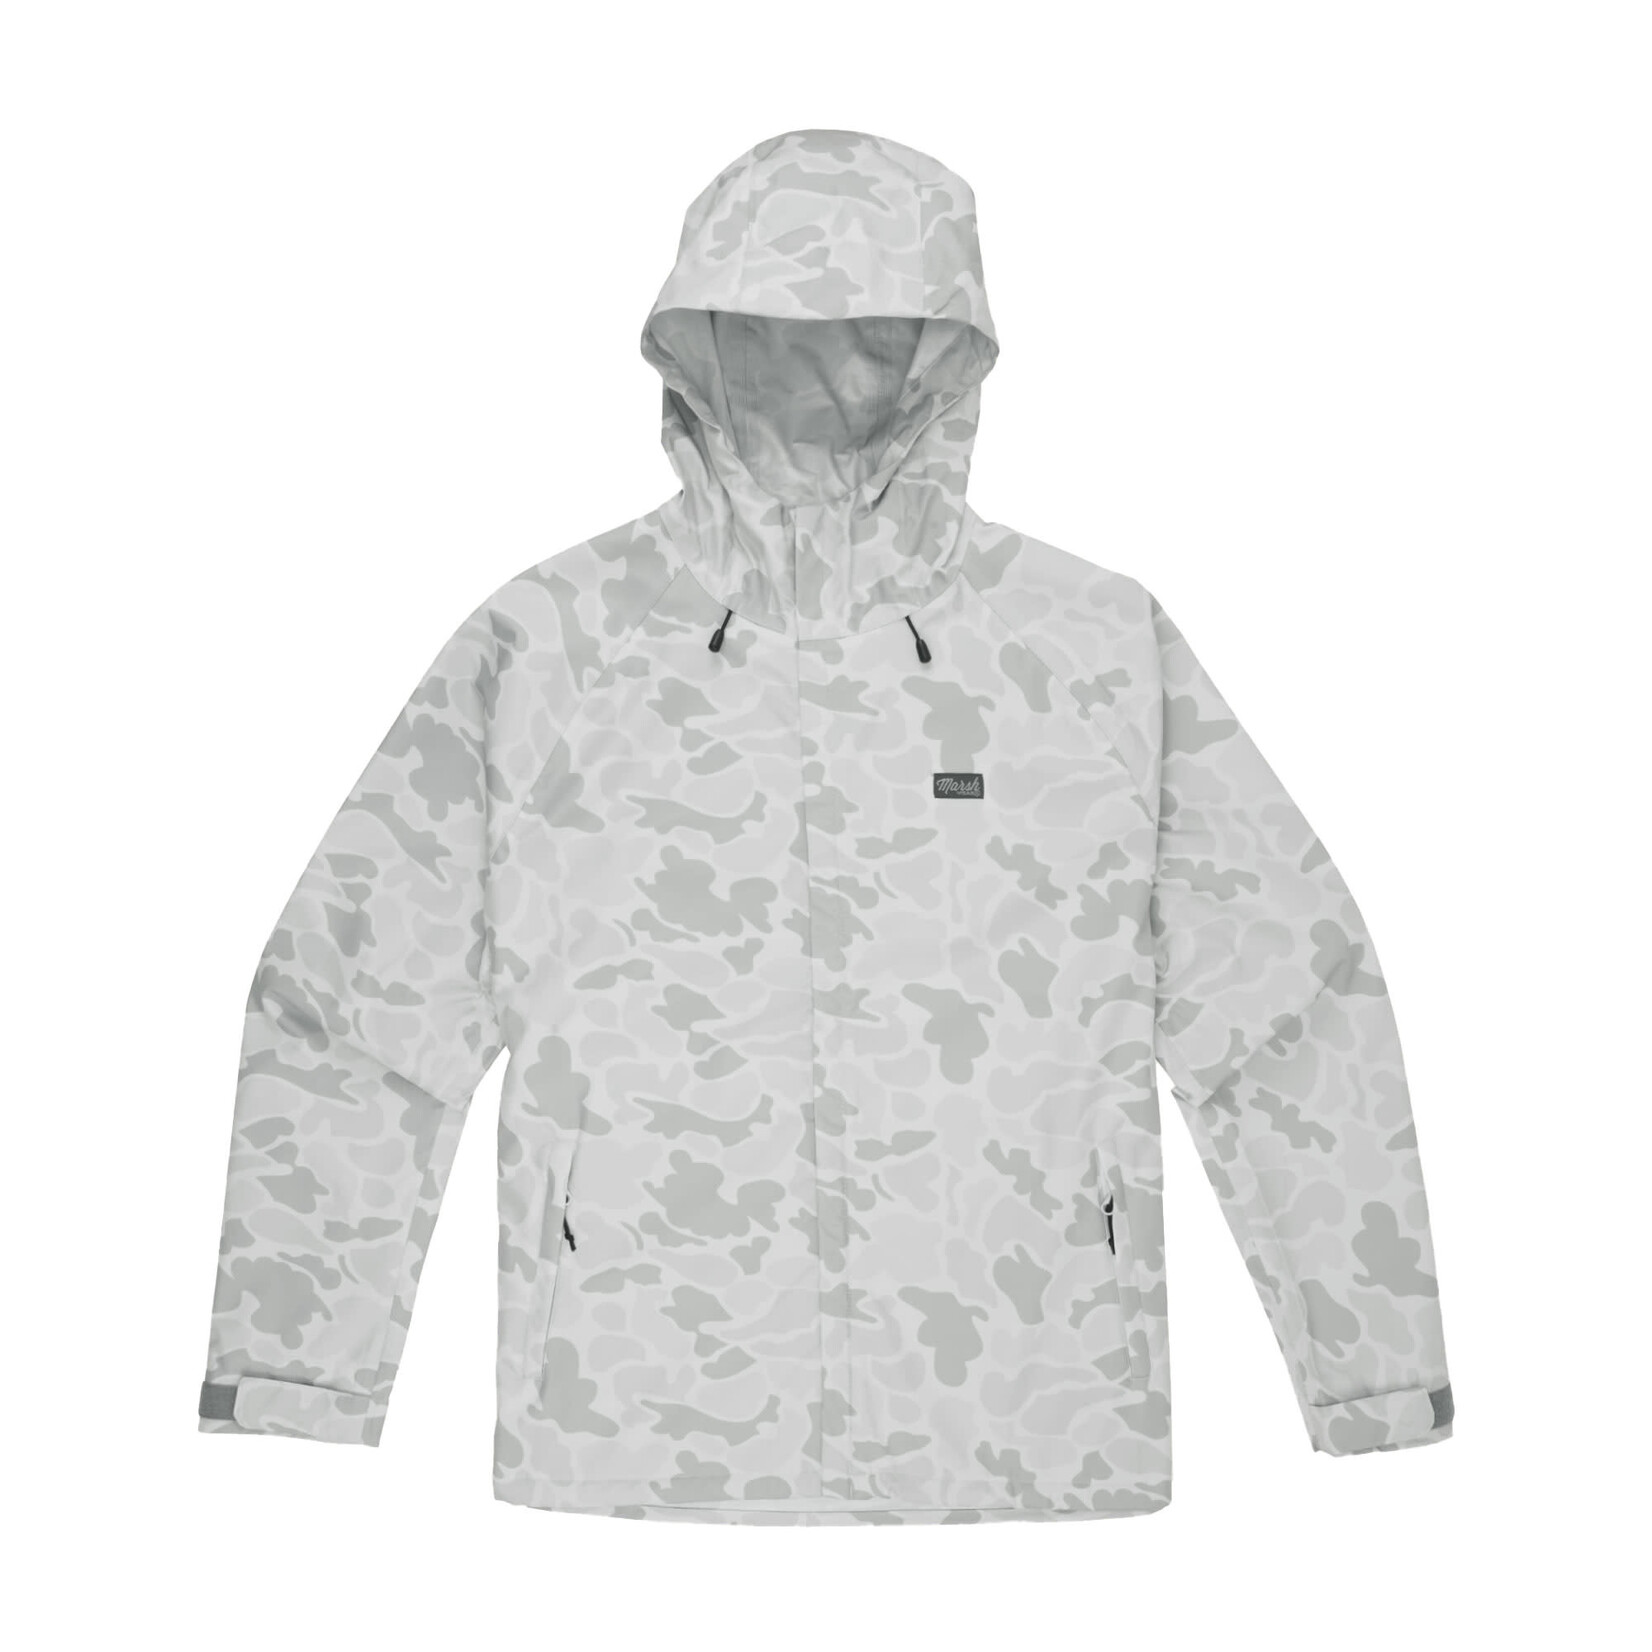 Marsh Wear Marsh Wear Apparel Men's Gulfport Rain Jacket